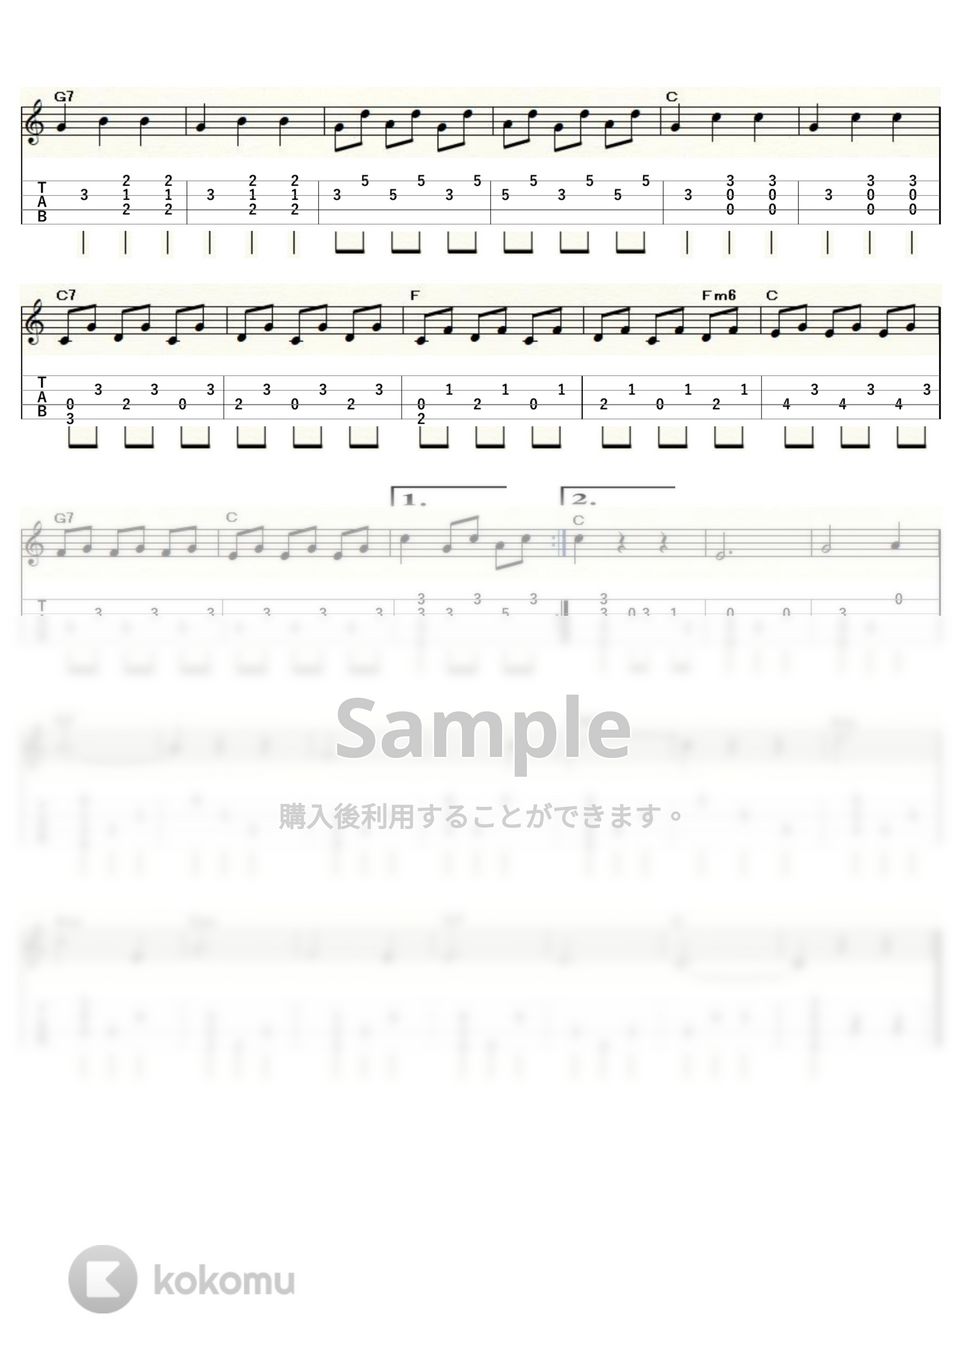 ワルトトイフェル - スケーターズワルツ (ｳｸﾚﾚｿﾛ / Low-G / 初級～中級) by ukulelepapa